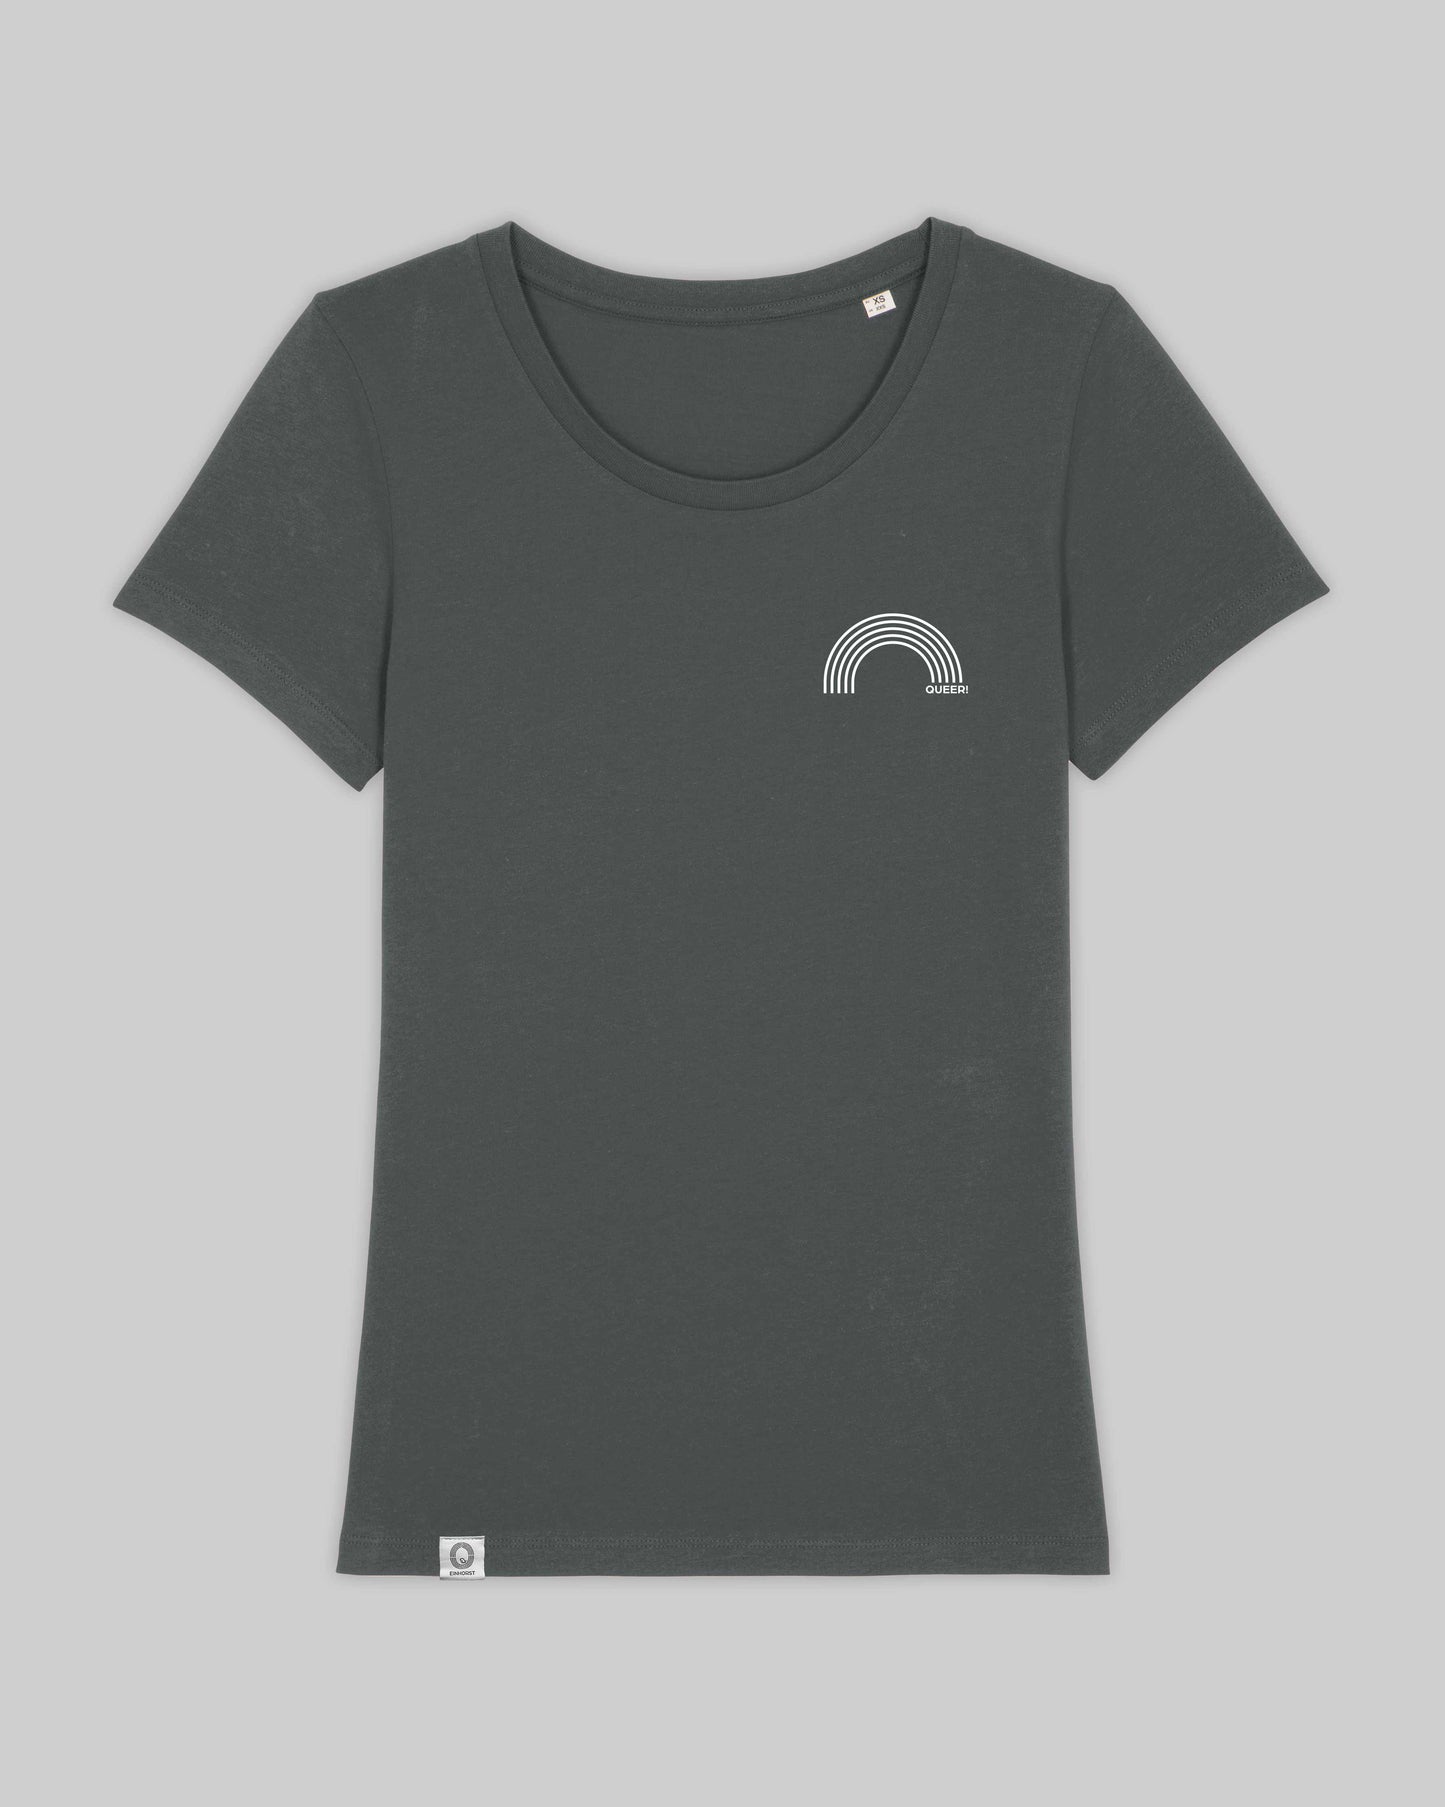 EINHORST® Organic Shirt tailliert in "Anthracite" mit dem Motiv "queer Regenbogen" in der Kombination weißer Regenbogen mit weißer Schrift, Bild von Shirt von vorne